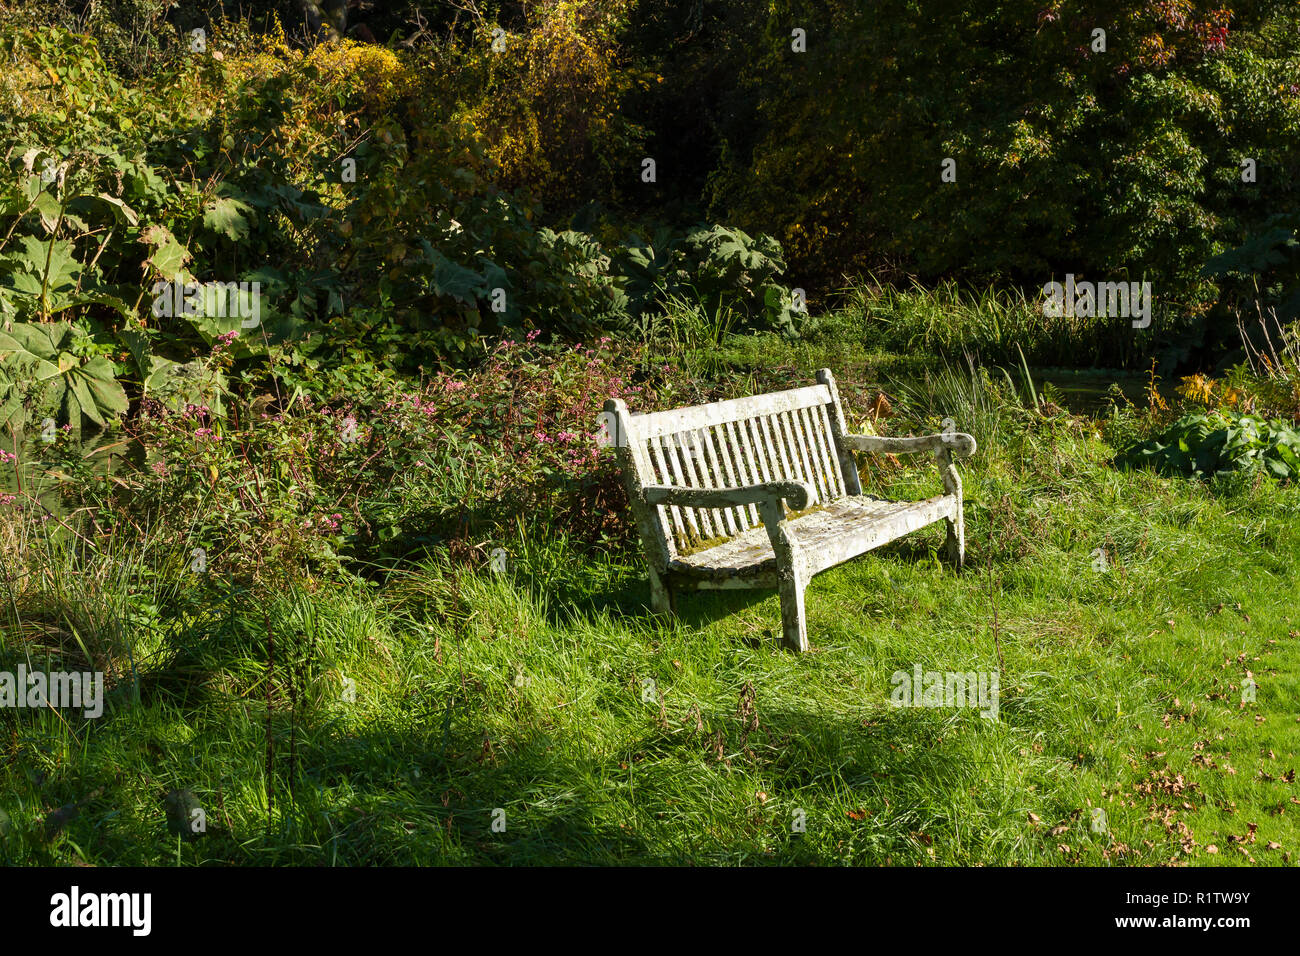 Eine leere Bank aus Holz, einem ruhigen Ort in einem wunderschönen Garten zu sitzen, Herbst UK Stockfoto